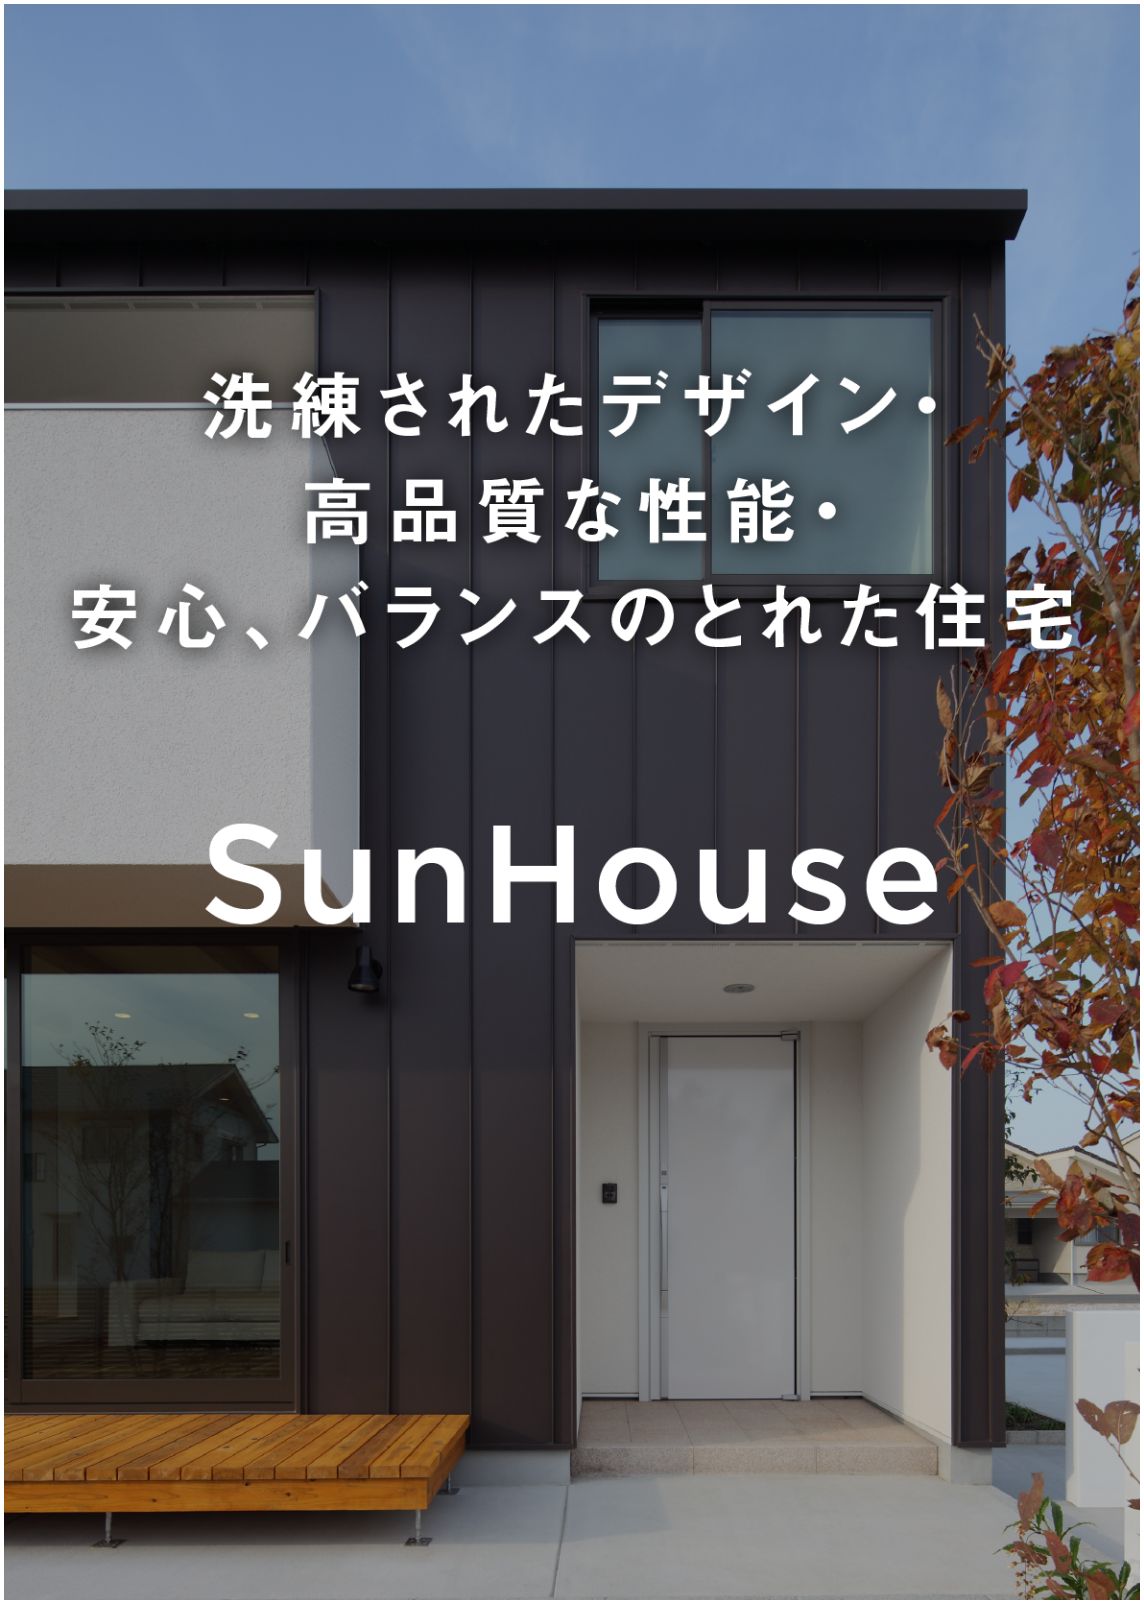 洗練されたデザイン・高品質な性能・安心、バランスのとれた住宅 SunHouse